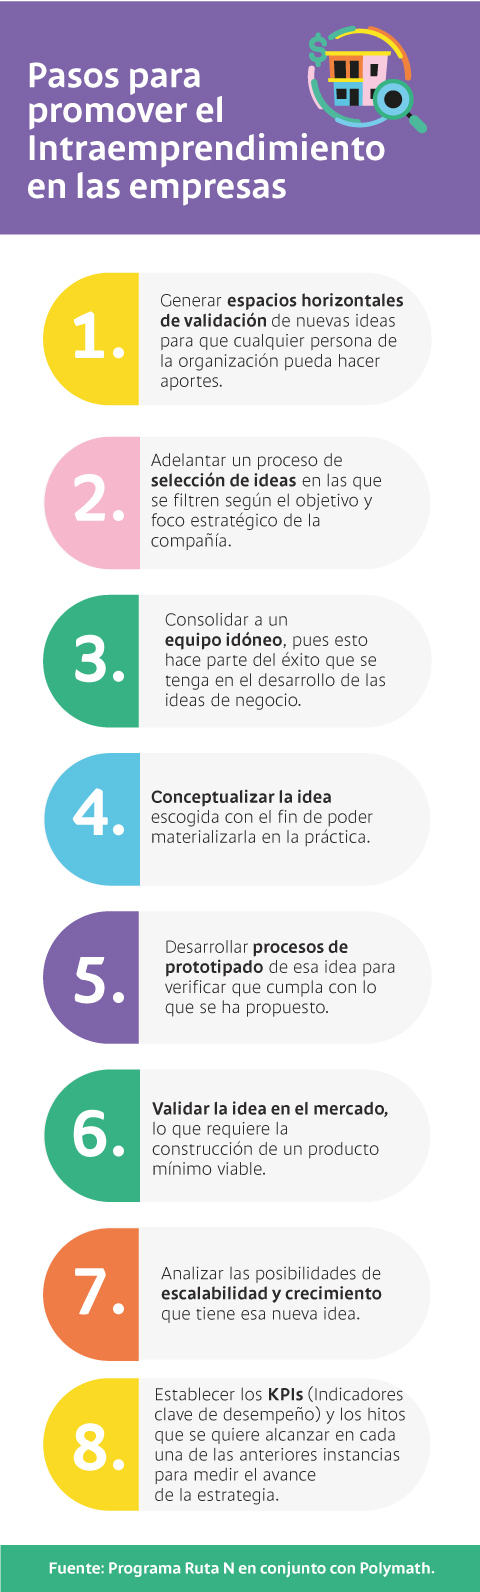 7 pasos para promover la innovación y el intraemprendimiento en las empresas